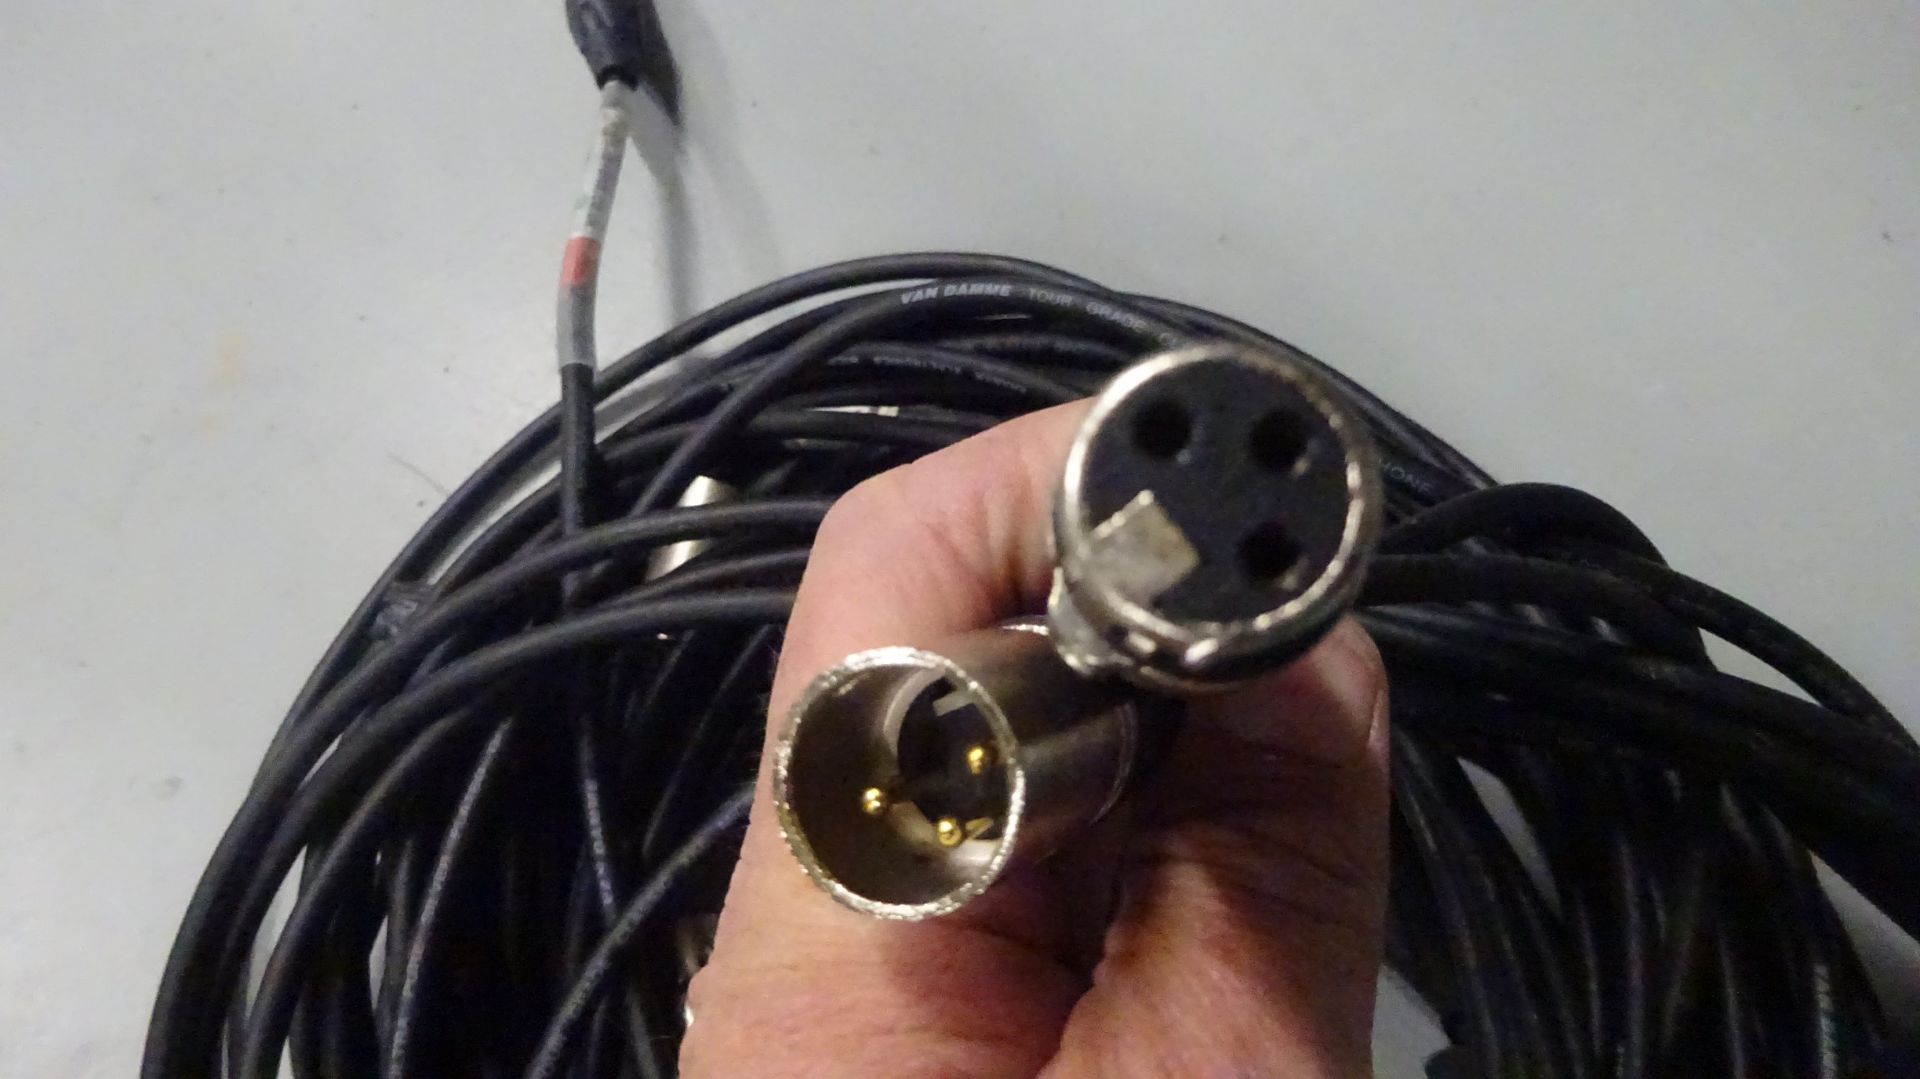 5 x 5m XLR M - XLR F Cable - Image 2 of 2